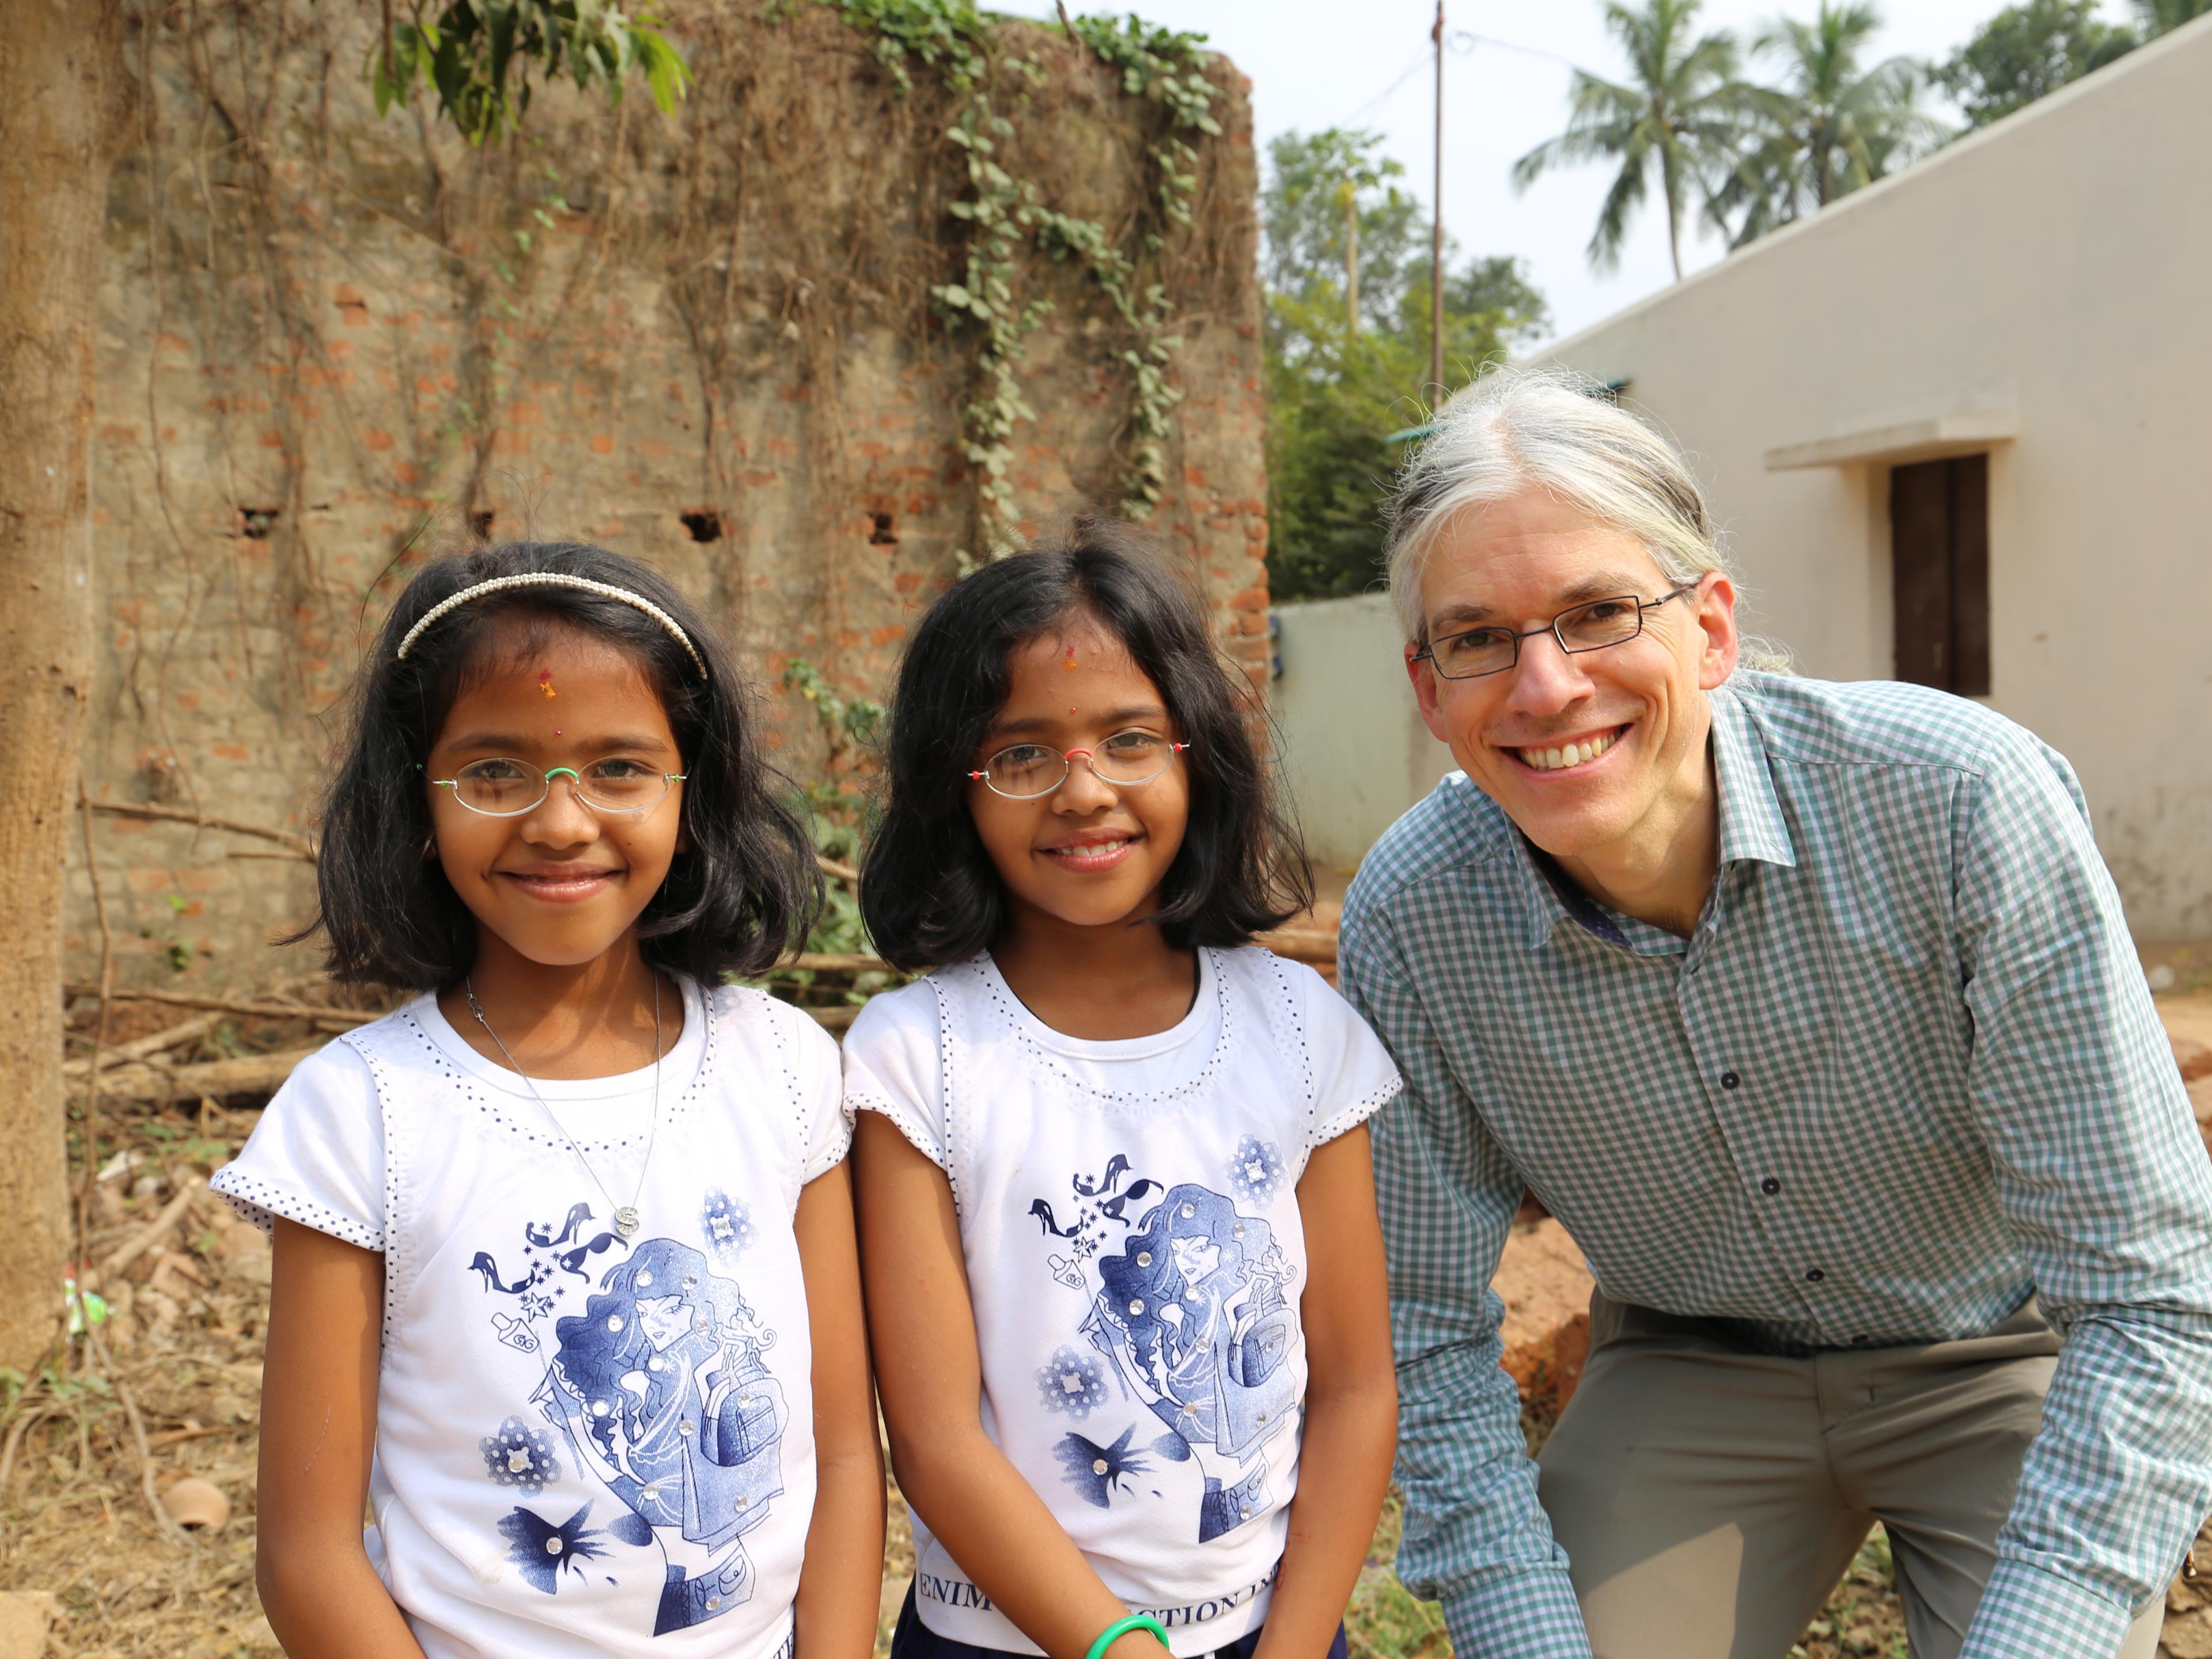 Martin Aufmuth neben Zwillingsmädchen in Indien, die Mädchen tragen EinDollarBrillen